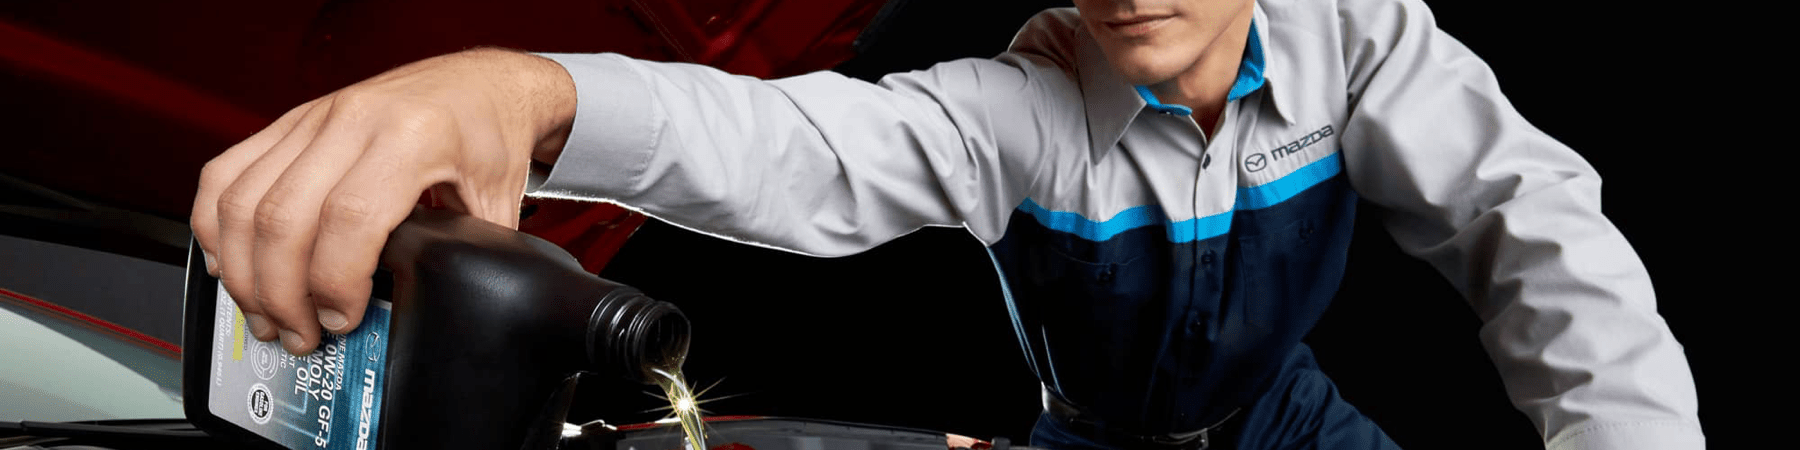 Mazda technician pours oil in car engine